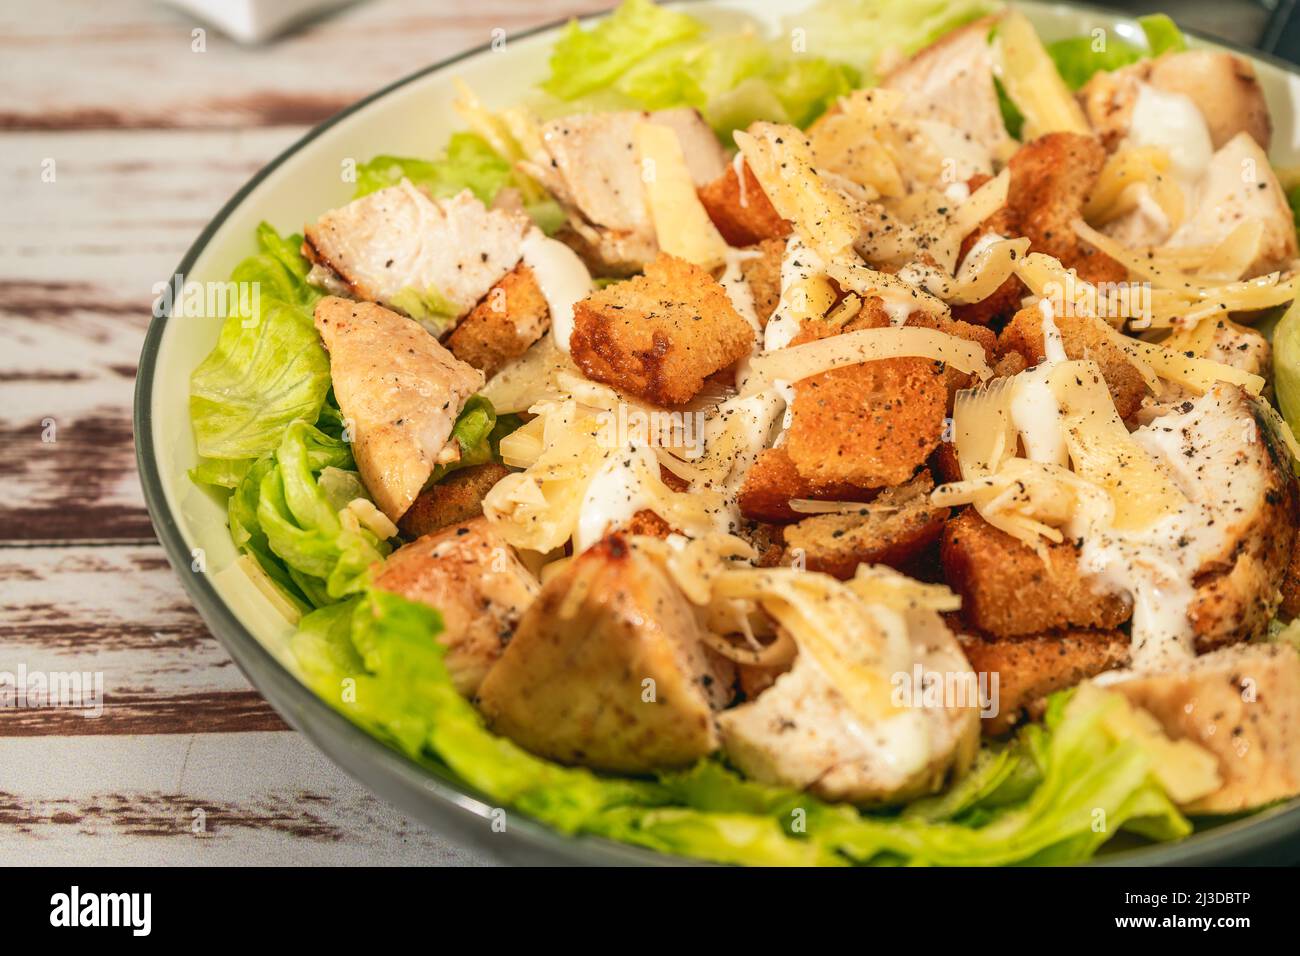 Salade César exquise avec de petites bouchées de poulet et une sauce aioli traditionnelle dans un petit bol sur une table rustique. Vue en hauteur. Gros plan. Gourme Banque D'Images